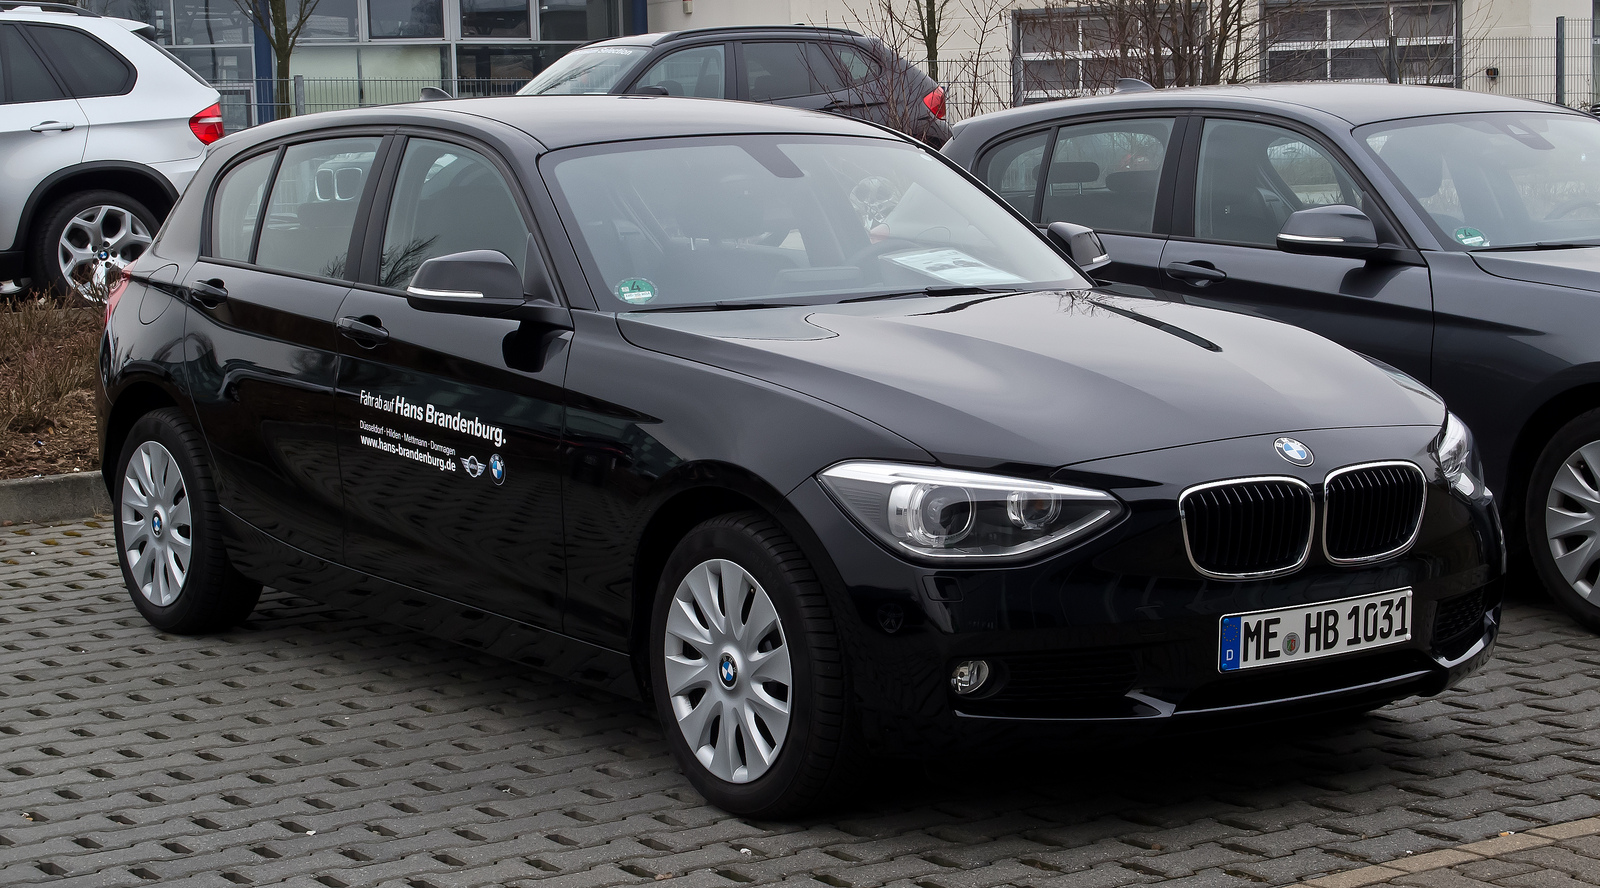 BMW 116i (F20) â€“ Frontansicht, 17. MÃ¤rz 2012, Mettmann | Flickr ...